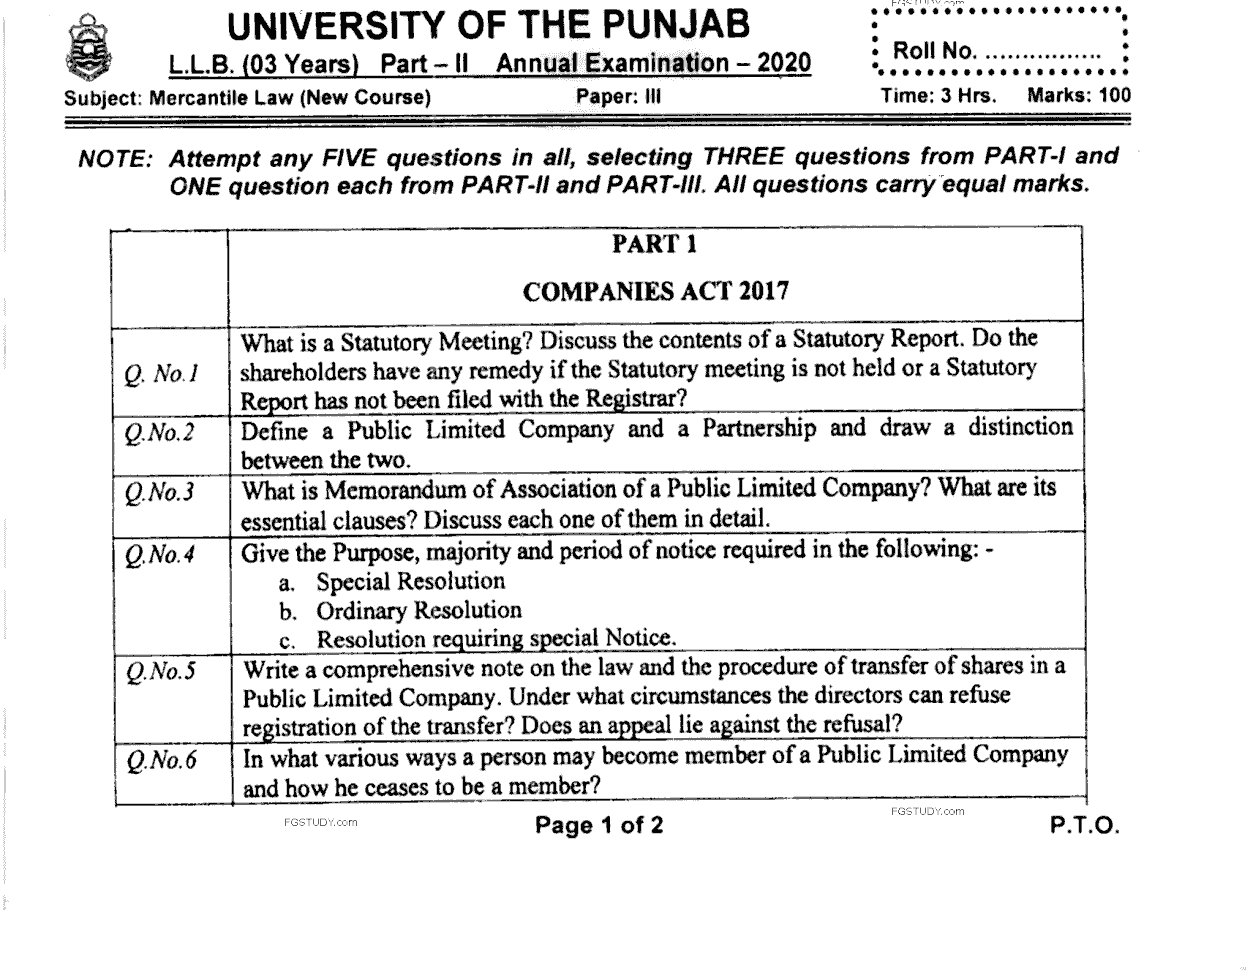 LLB Part 2 Mercantile Law Past Paper 2020 Punjab University